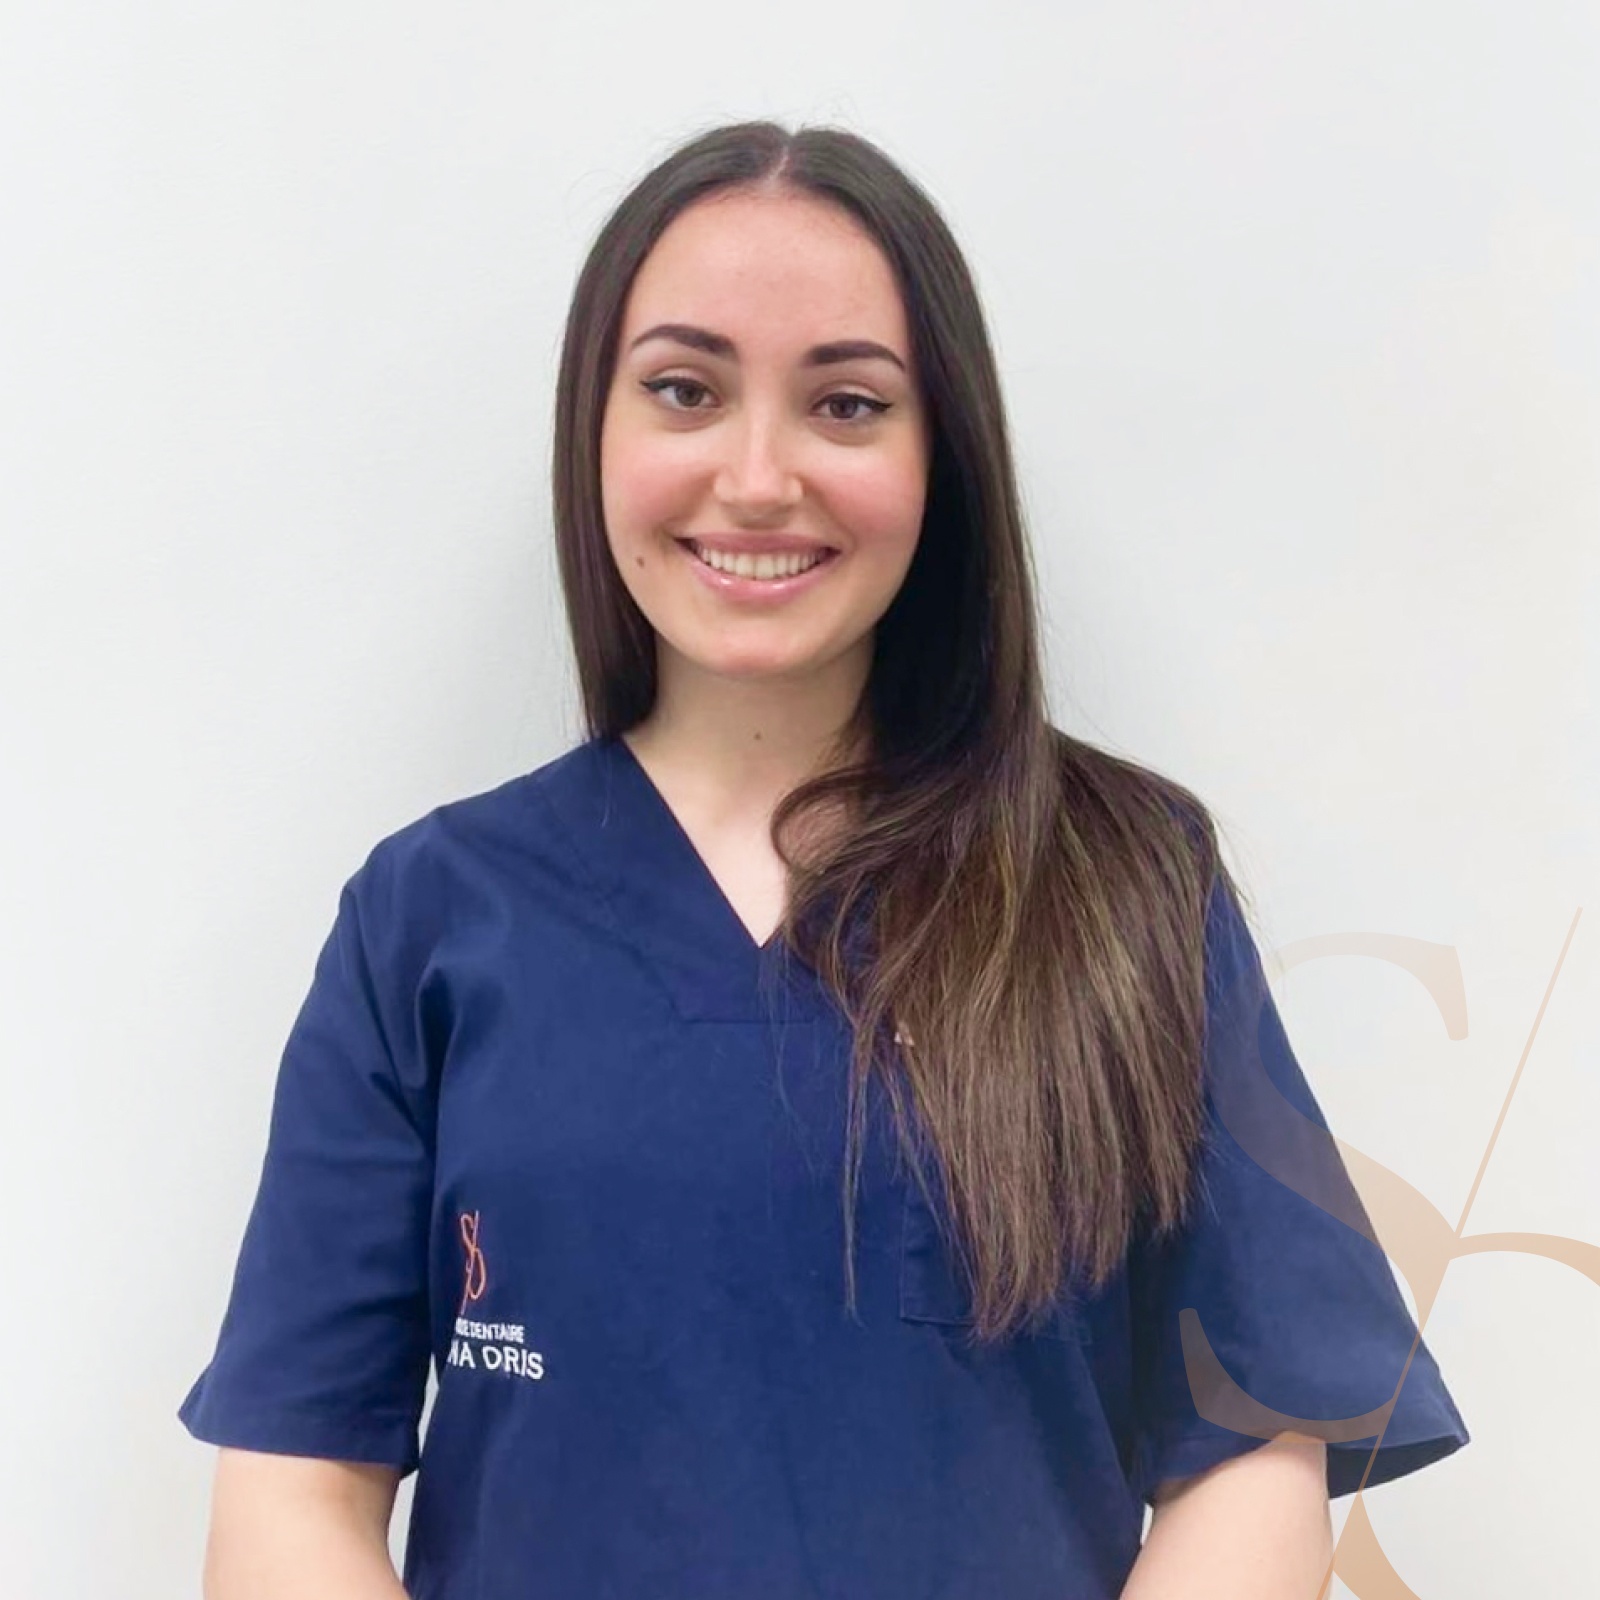 Dr Belaich | Equipe médicale | Clinique dentaire Sana Oris | Chirurgiens dentistes | Paris 8